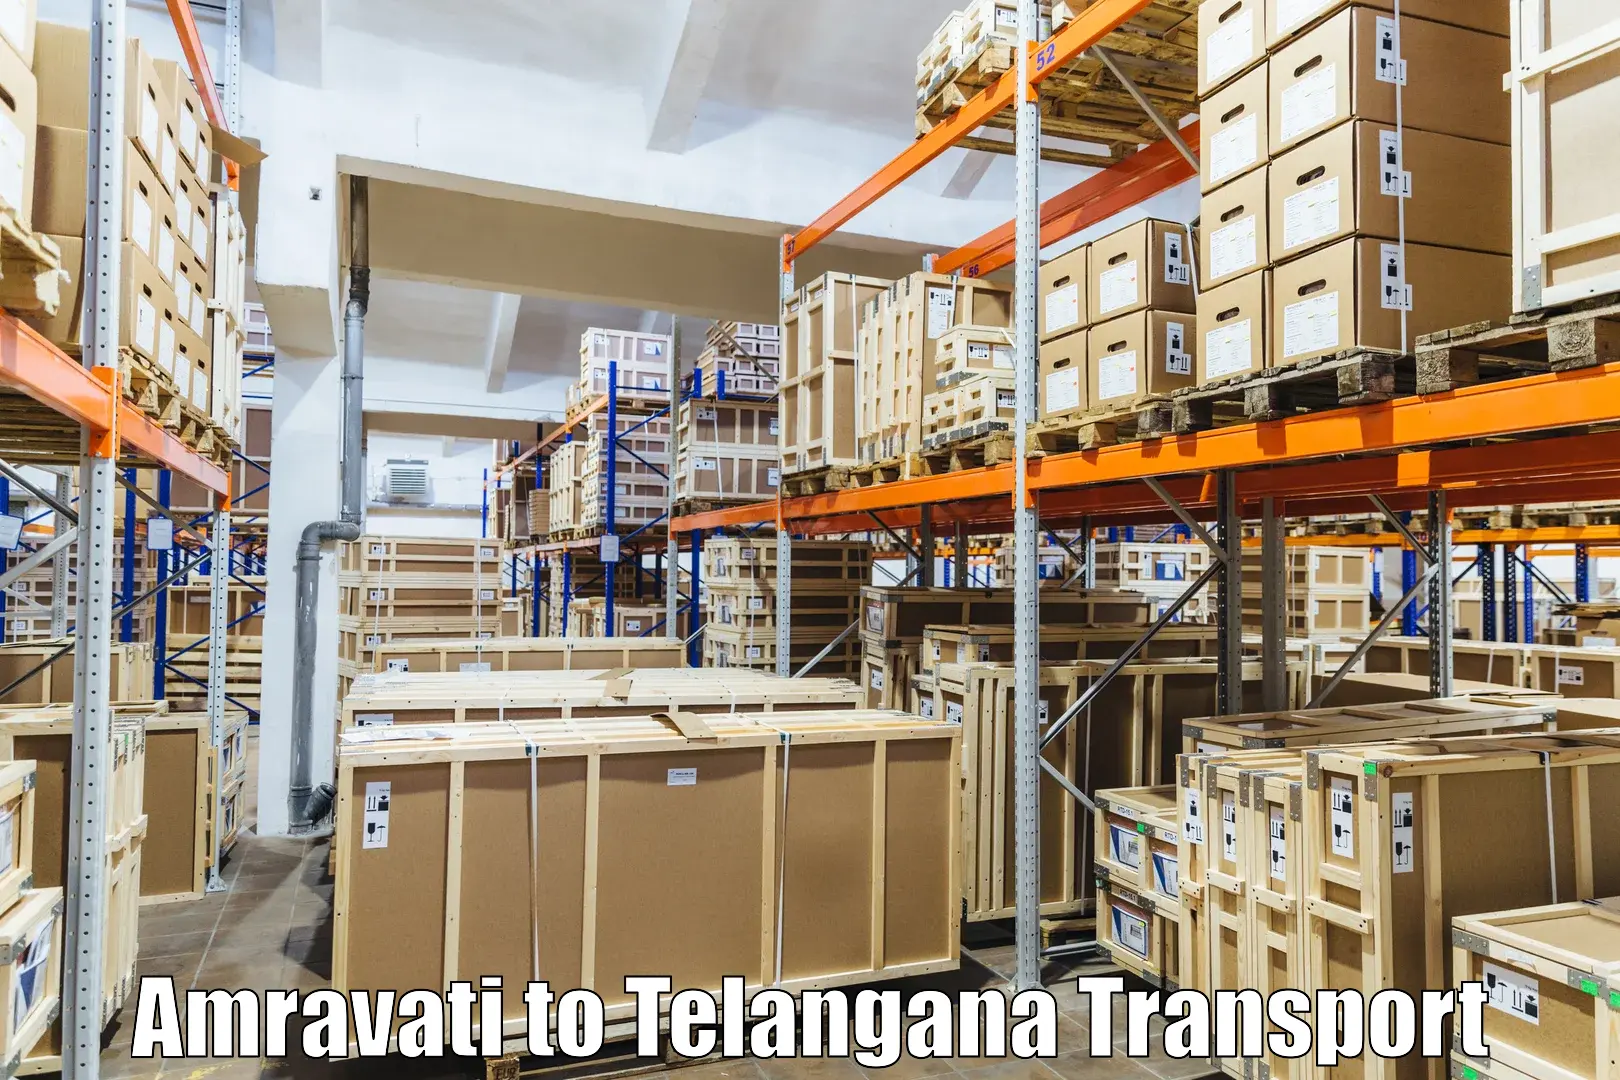 Furniture transport service Amravati to Jogulamba Gadwal